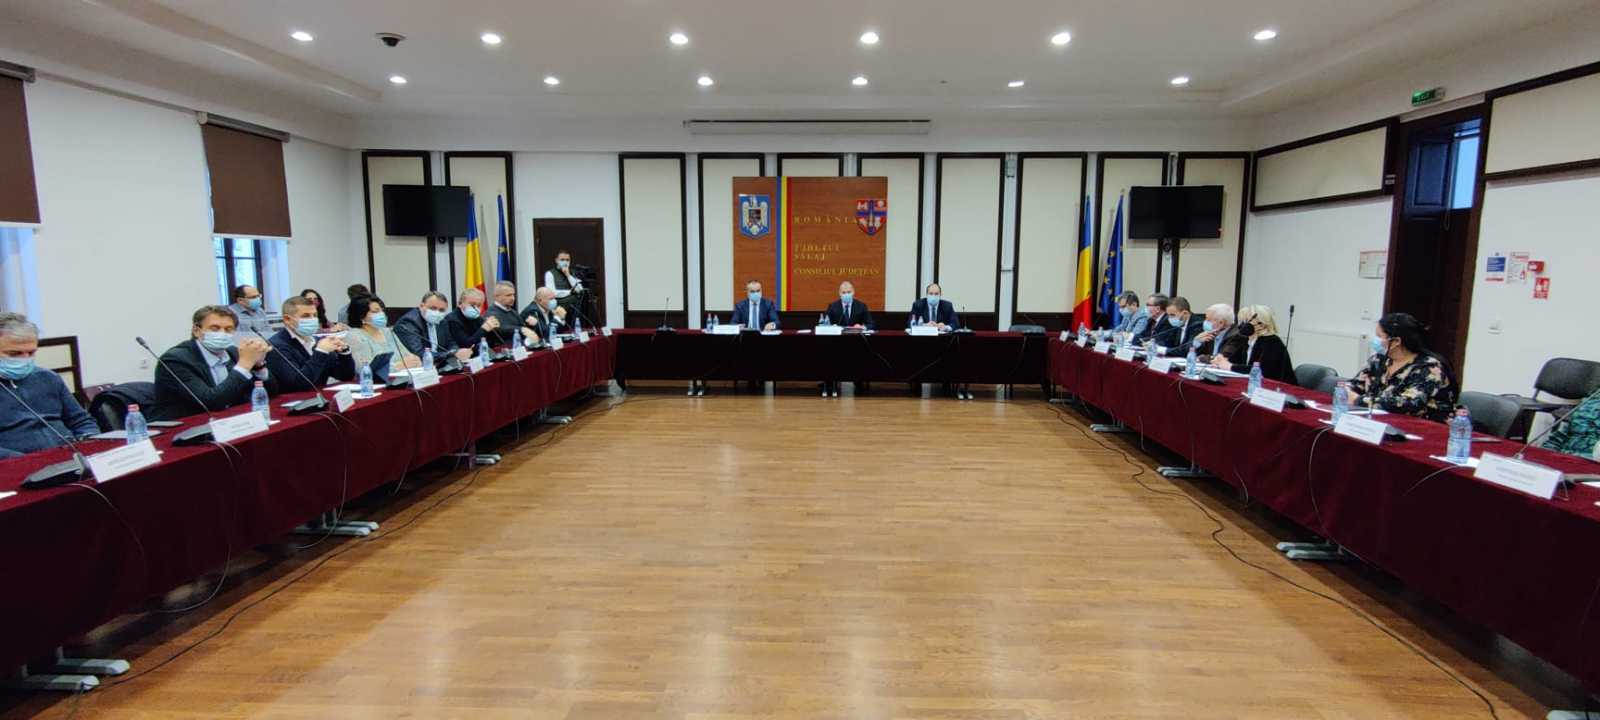 A január 28-i ülésen döntött a testület | Fotó: Szilágy Megyei Tanács/Facebook